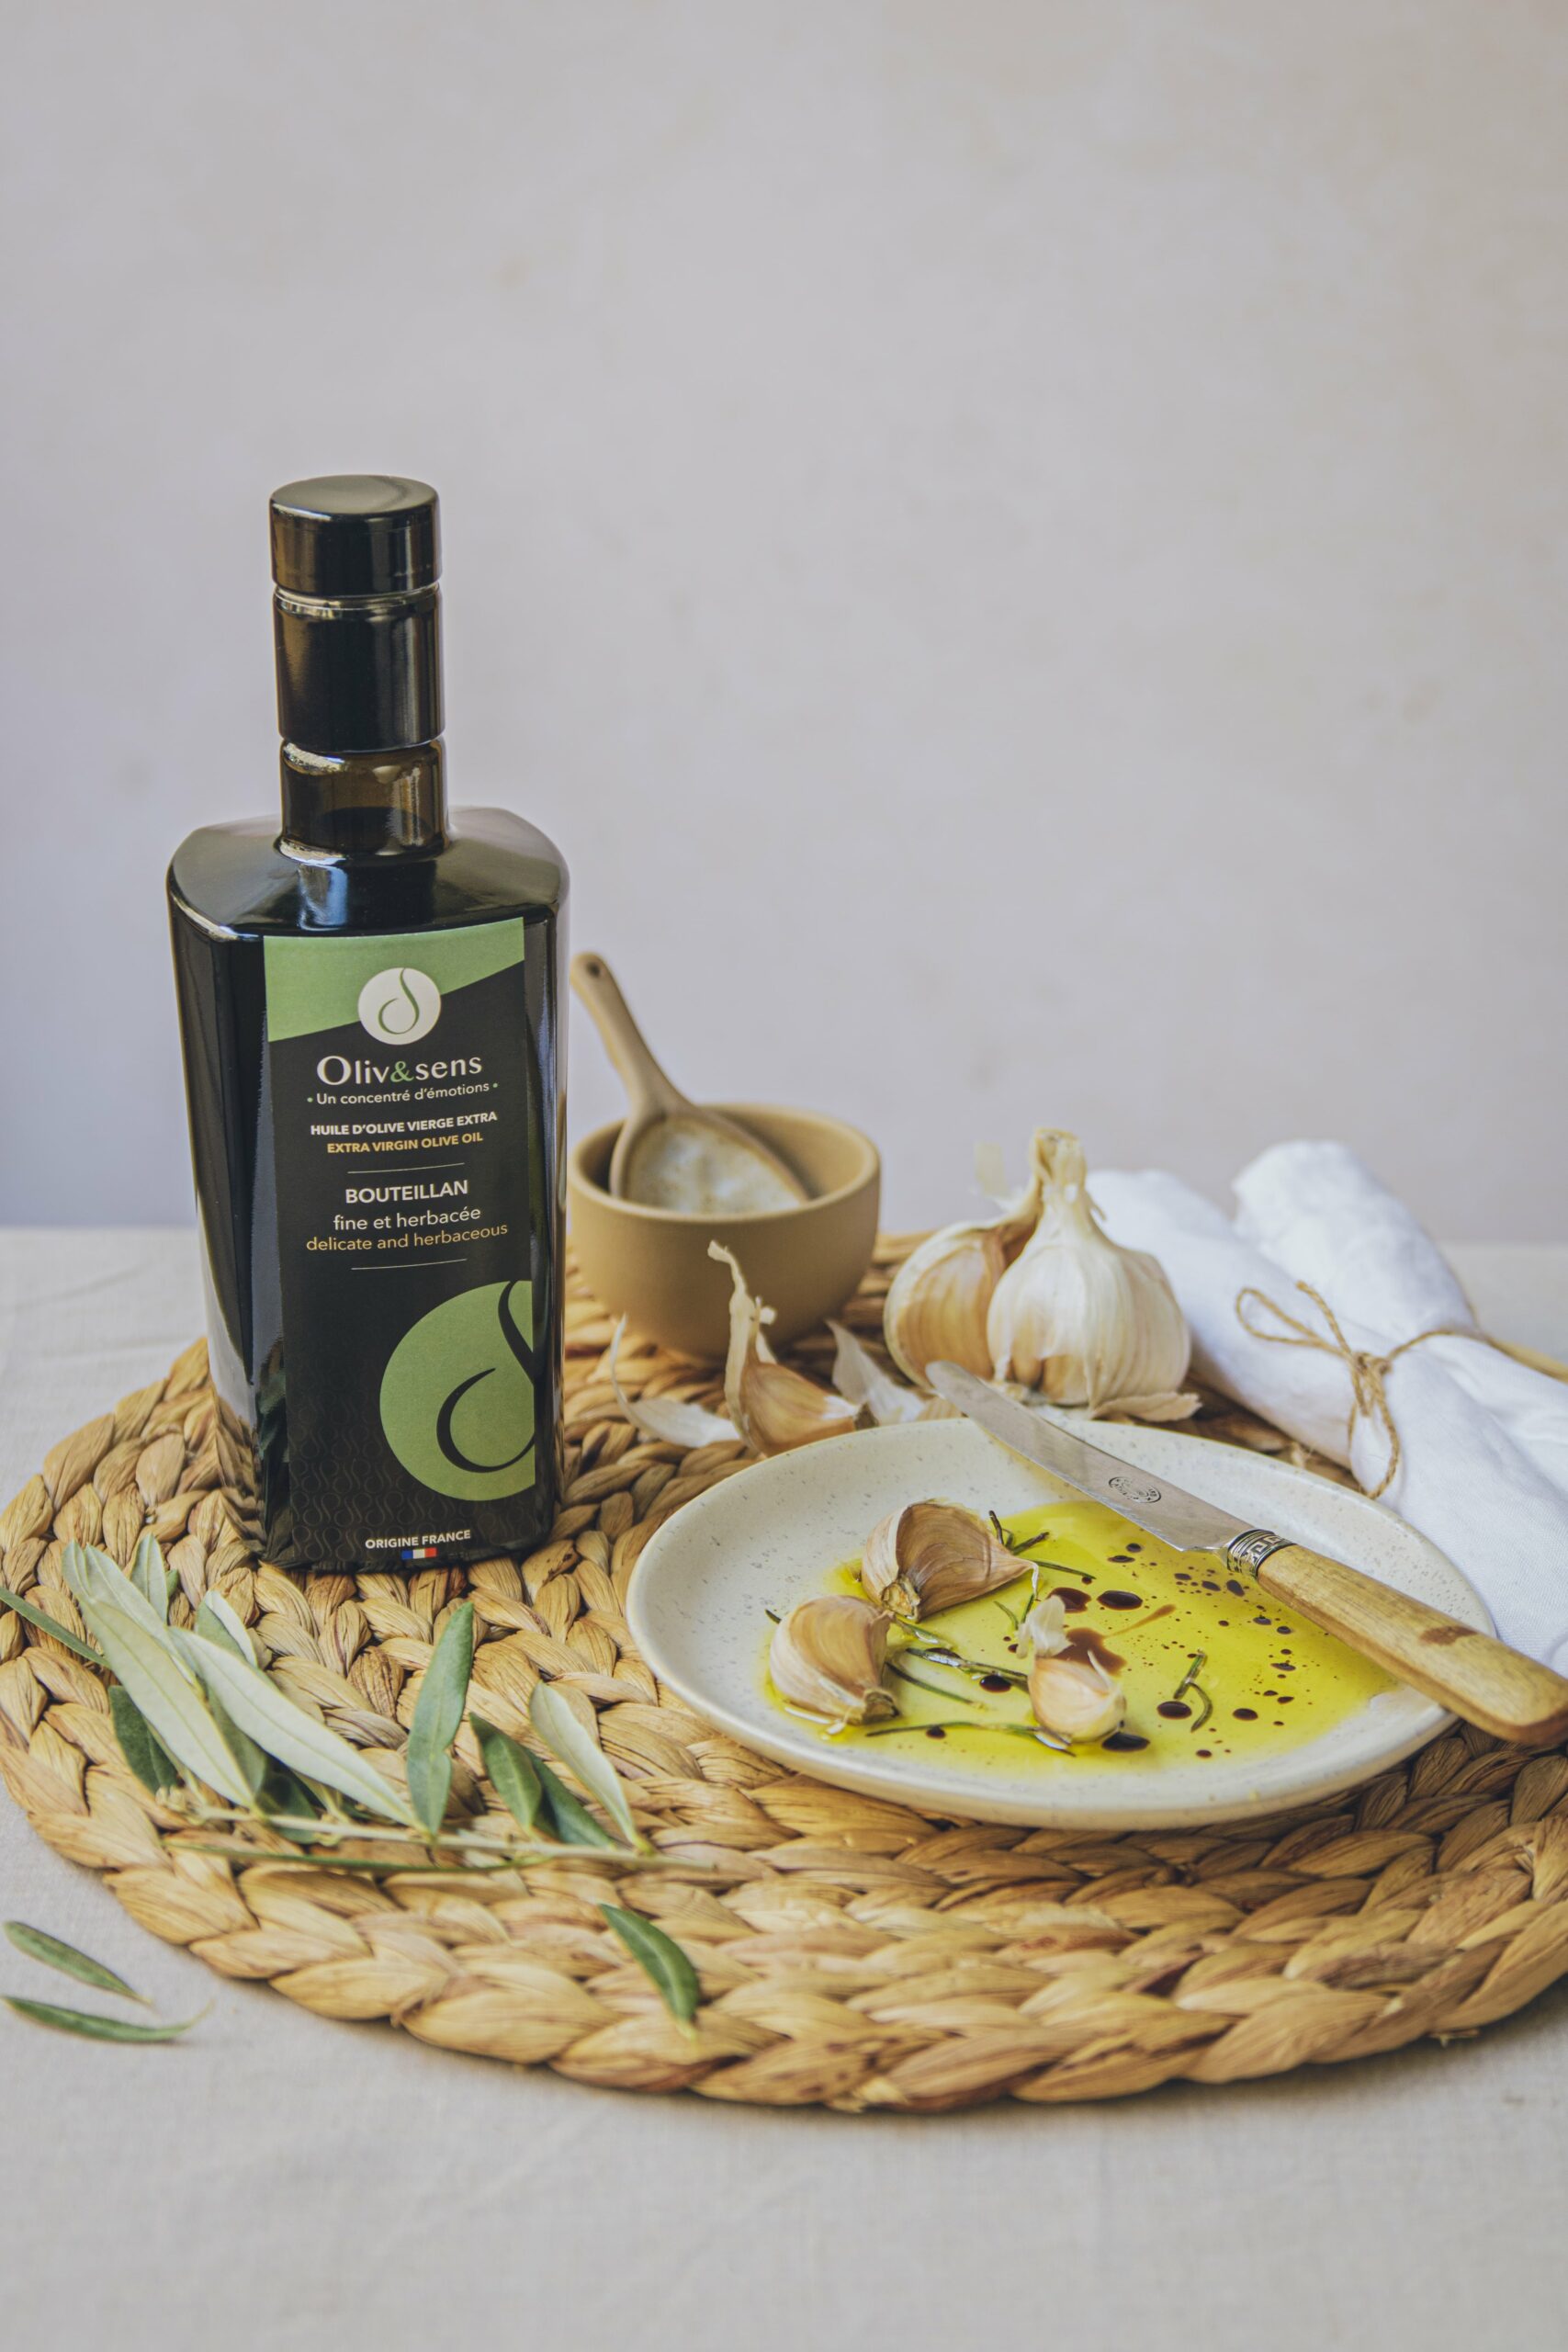 Olive et sens huile d'live vierge extra Bouteillan huile d'olive de France huile d'olive artisanale monovariétale huile d'olive médaillée d'or